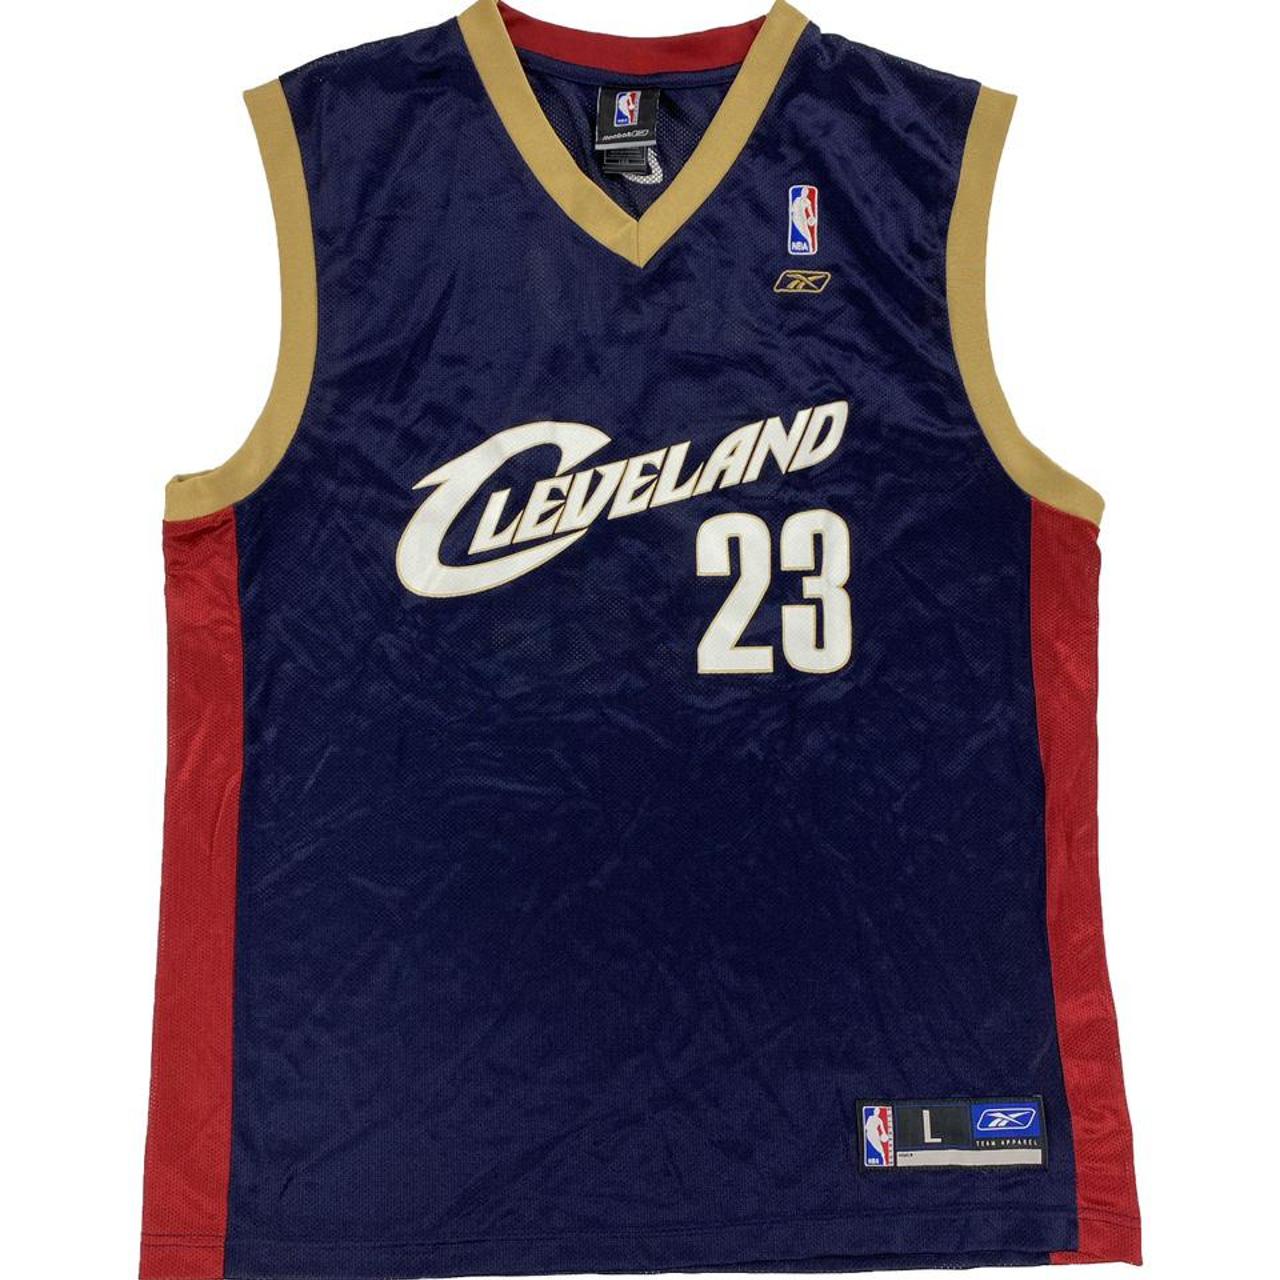 Vintage LeBron James Cleveland Cavaliers hoodie, not - Depop